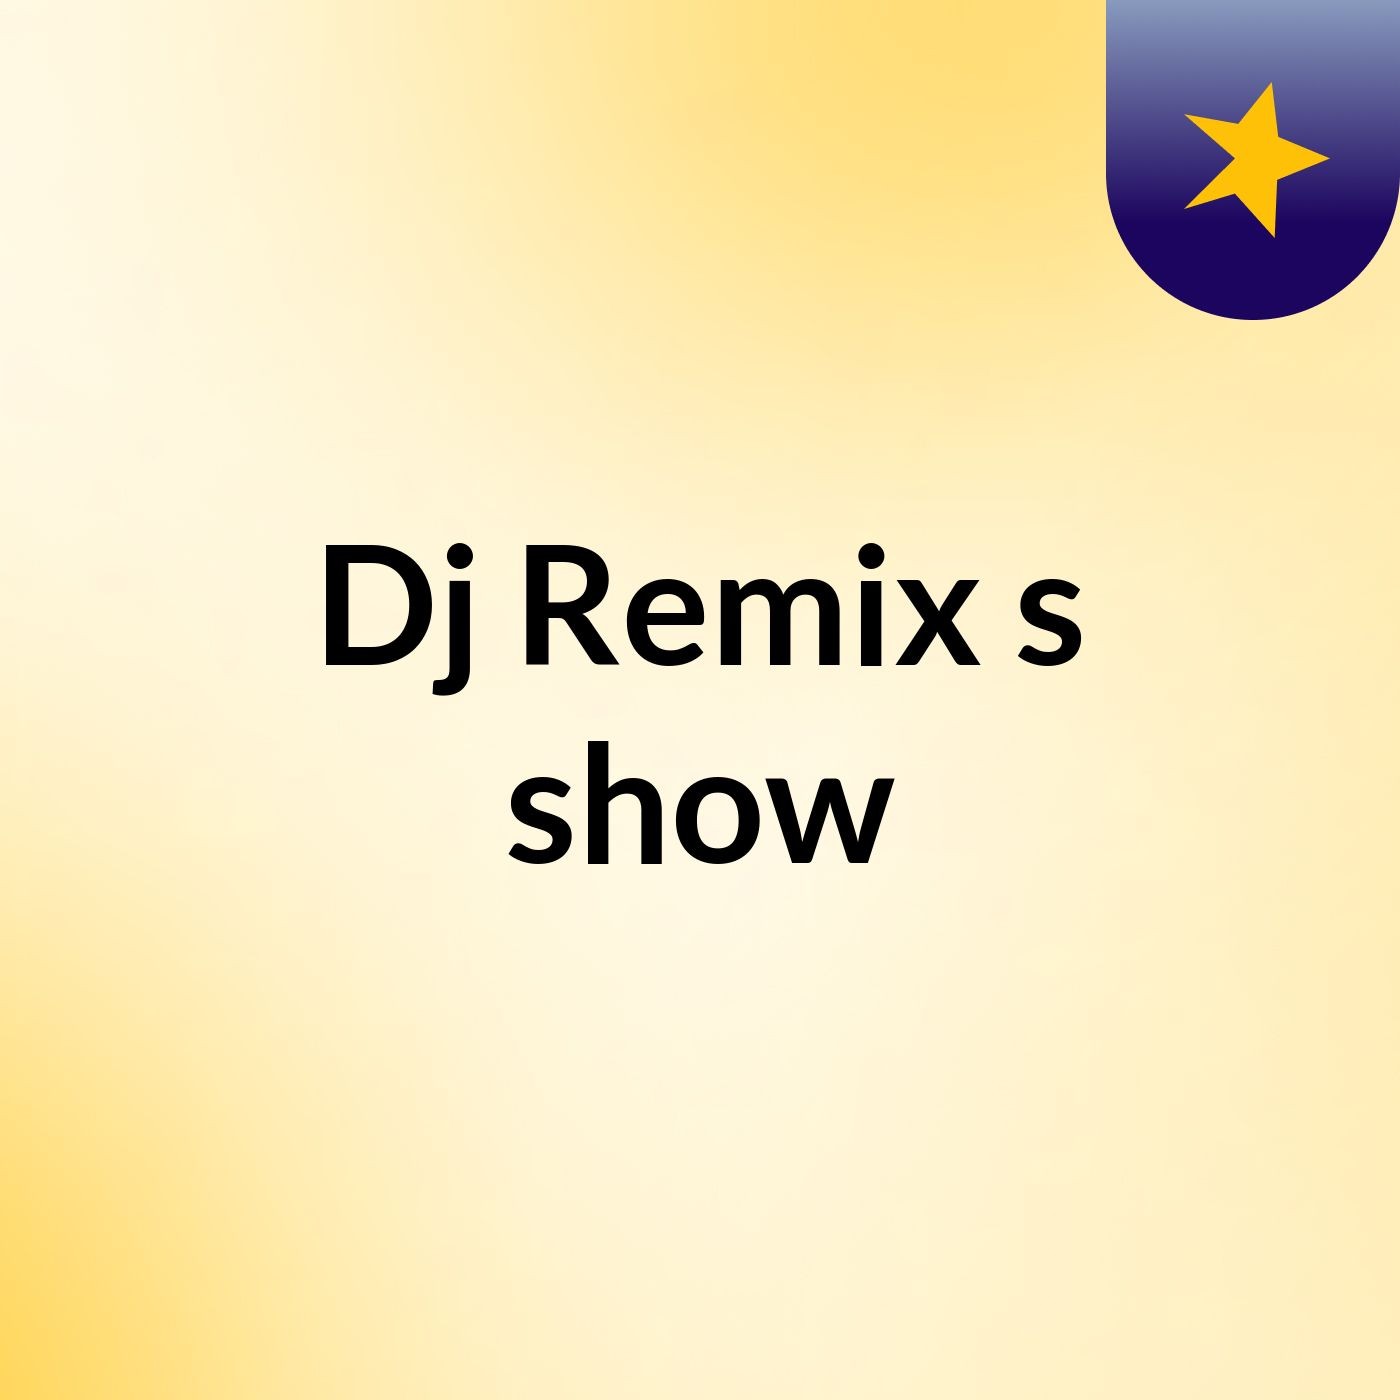 Dj Remix's show